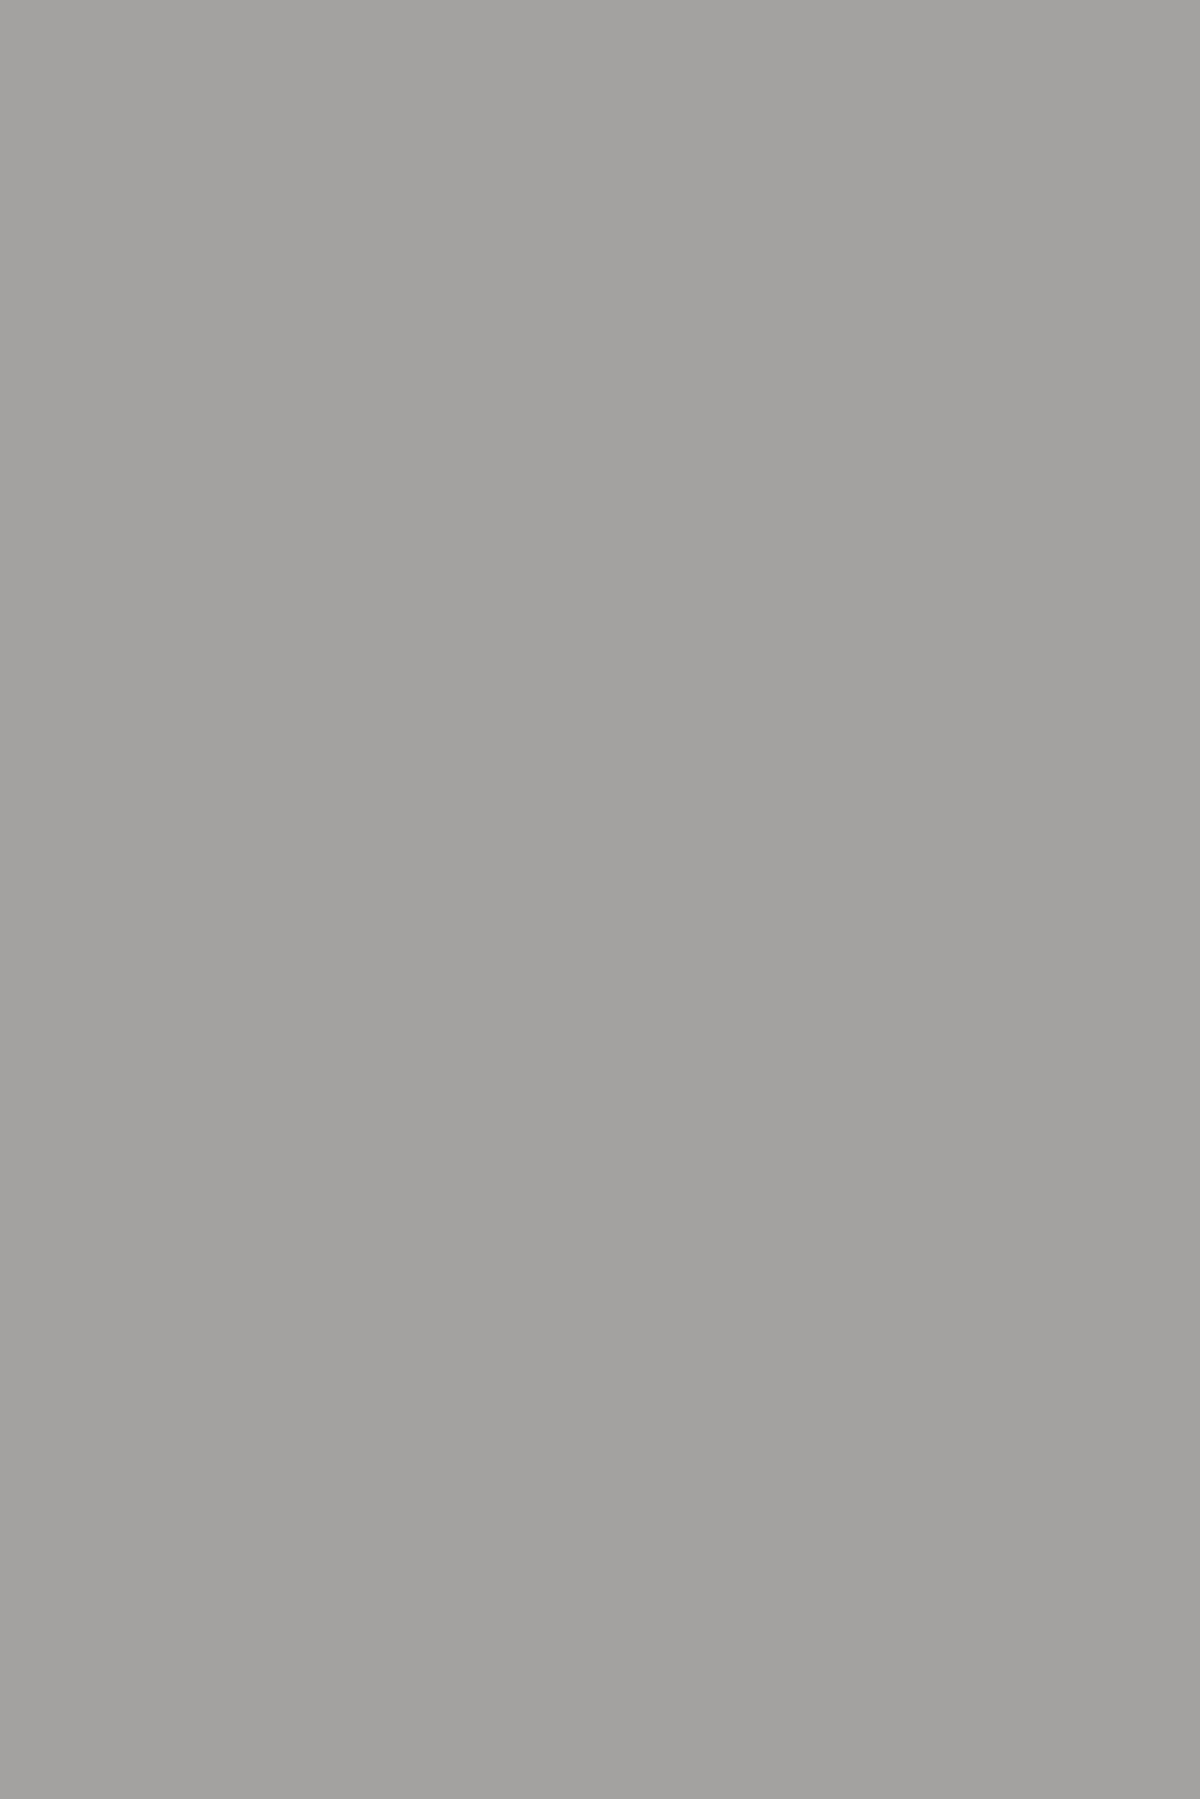 Тарелка мелкая из сервиза ордена Святого апостола Андрея Первозванного (Андреевский сервиз). 1778–1780. Эрмитаж